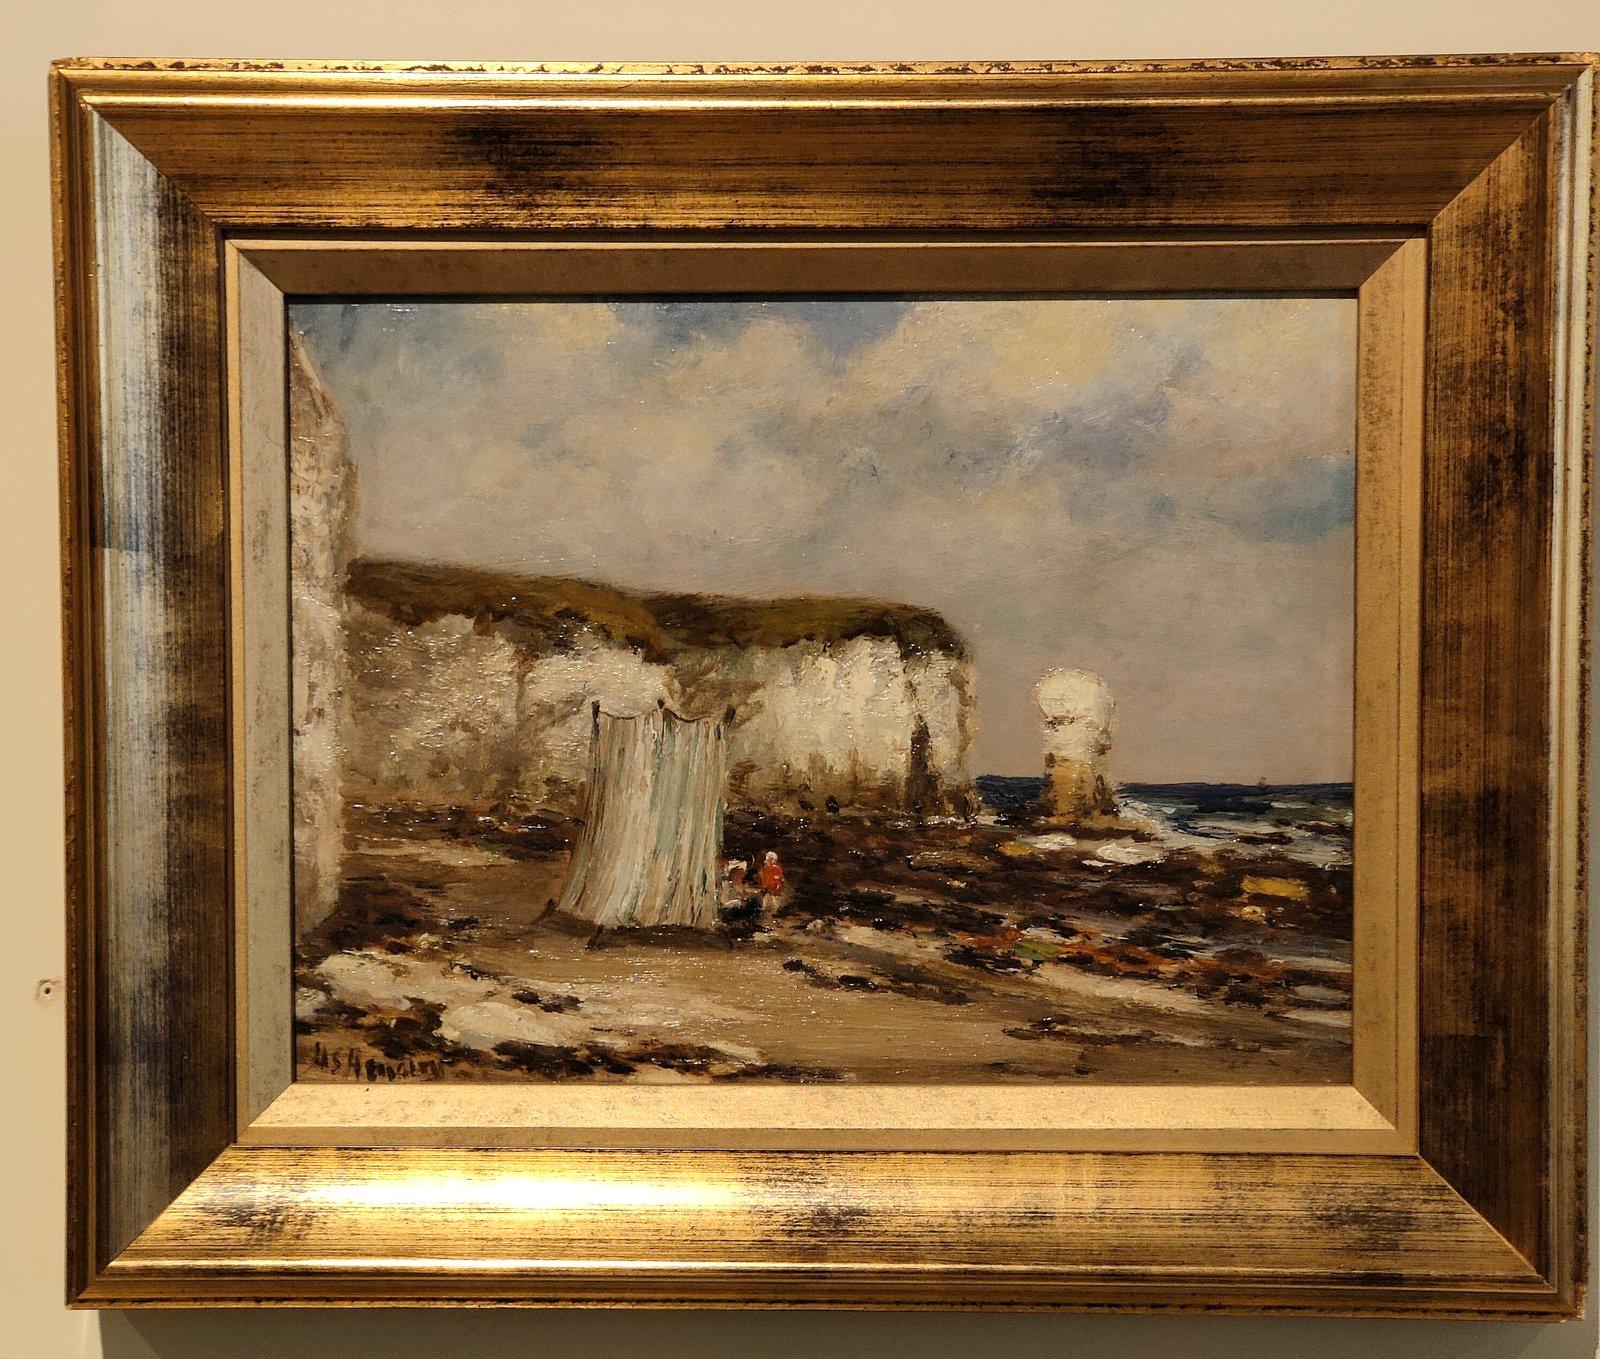 Peinture à l'huile de Hugh Shearwin Hemsley "Favourite Bathing Spot" 1852 -1925 Né à Tadcaster dans le Yorkshire, il avait un Studio à Leeds d'où il exposait à l'union des artistes du Yorkshire et à la Royal Academy. Huile sur planche.